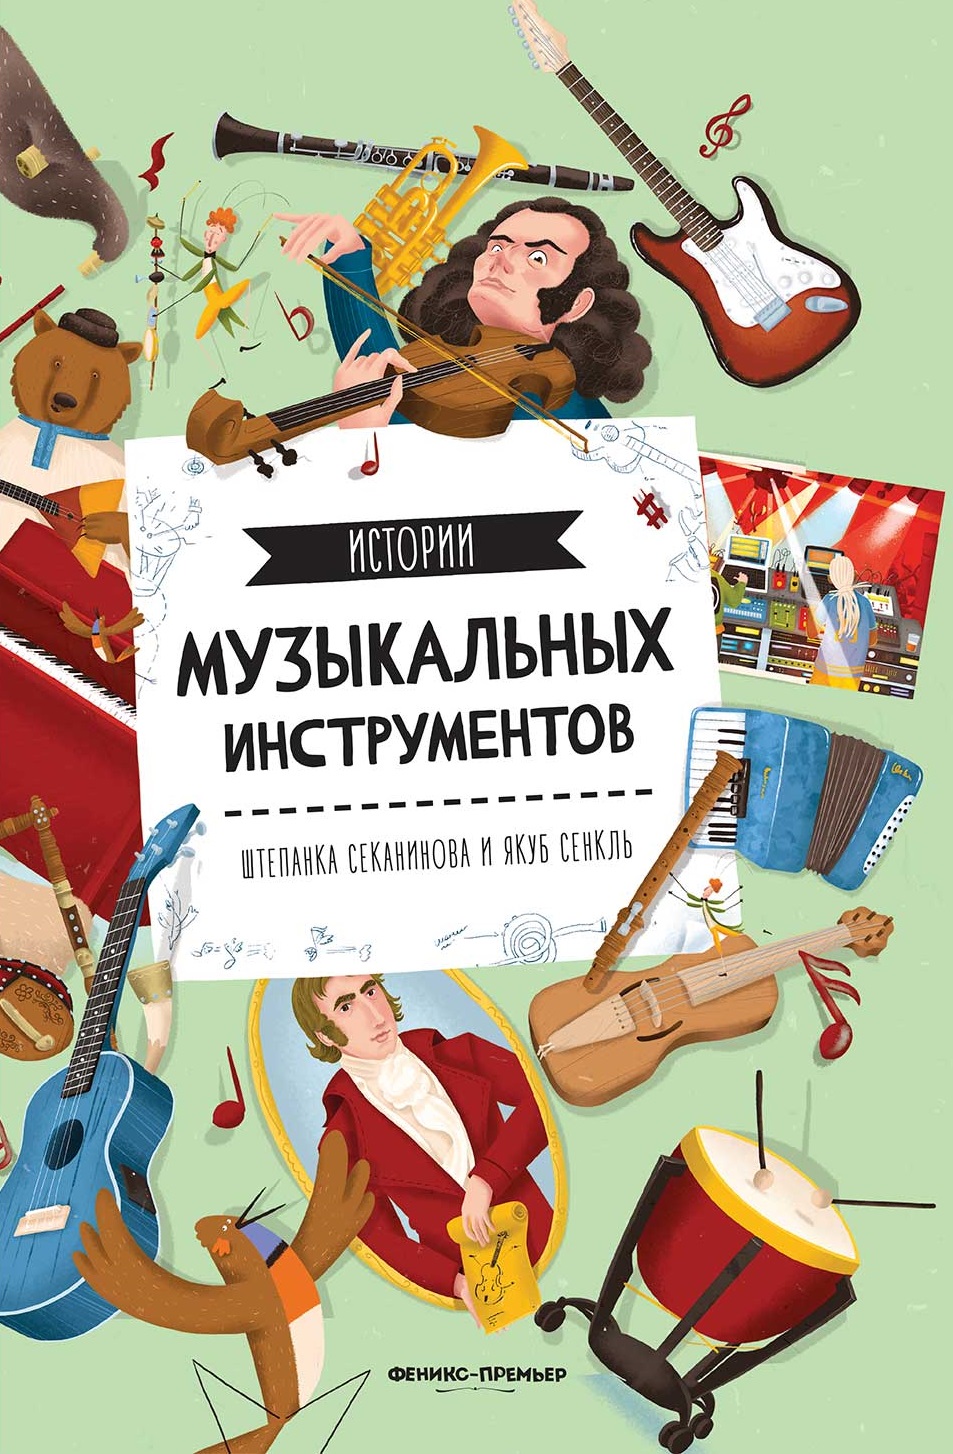 Секанинова Штепанка Истории музыкальных инструментов